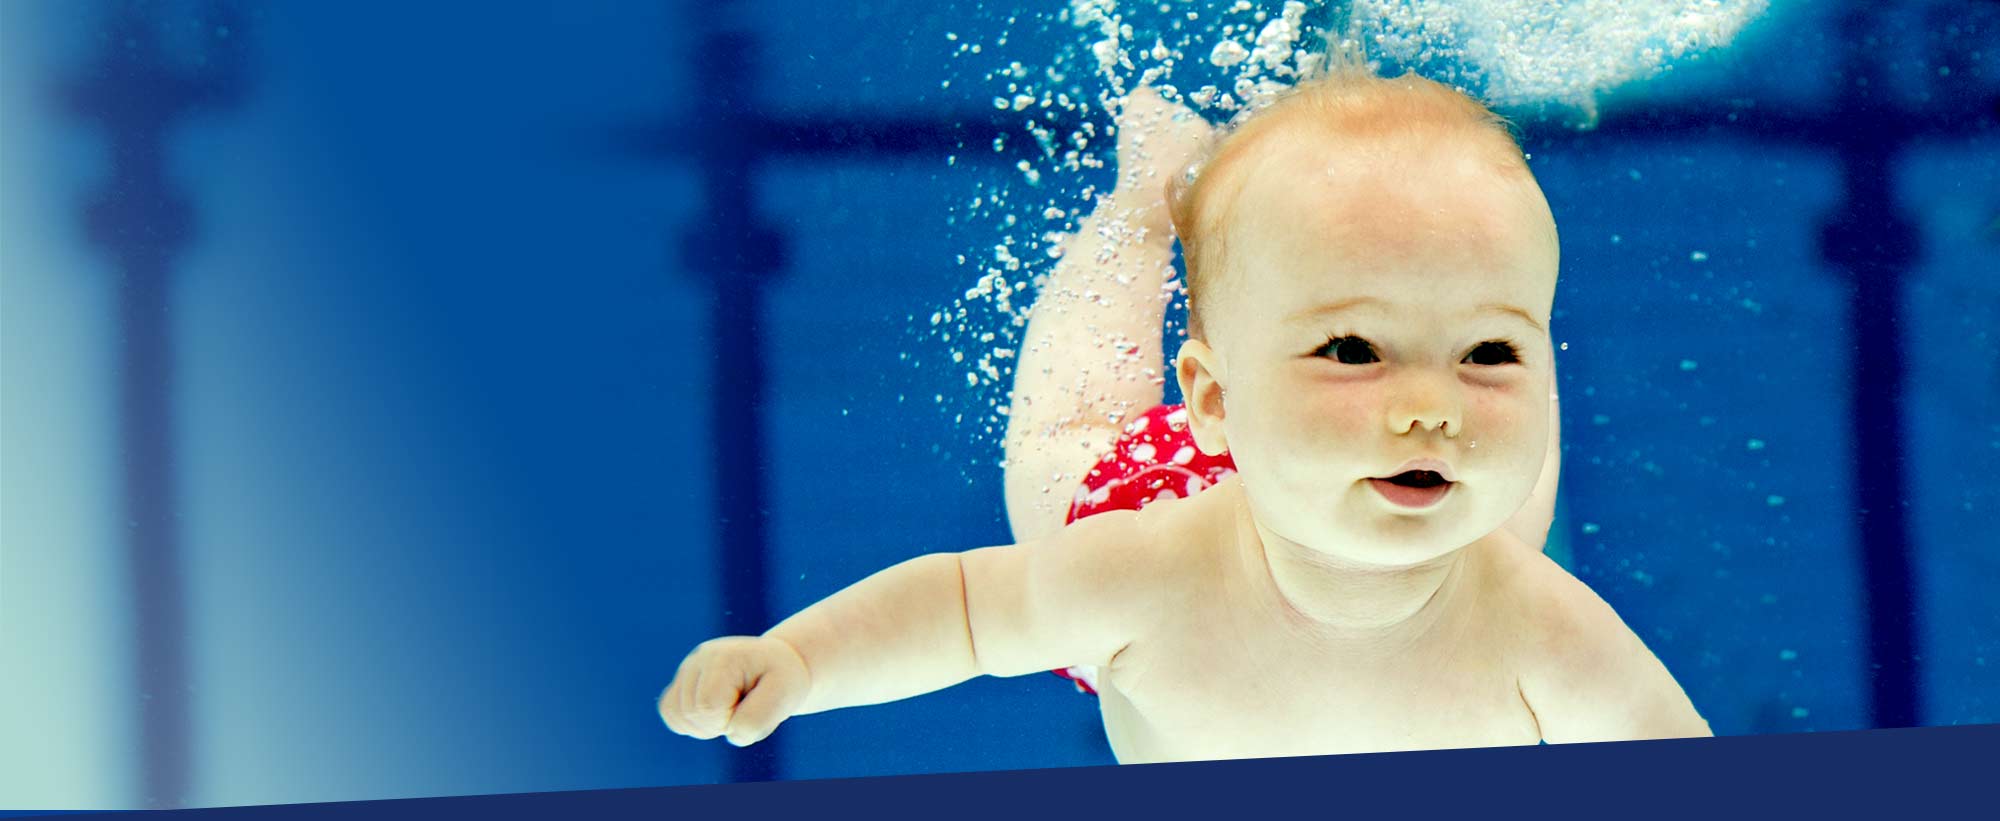 Aquababys, Aquasport, Babyschwimmen